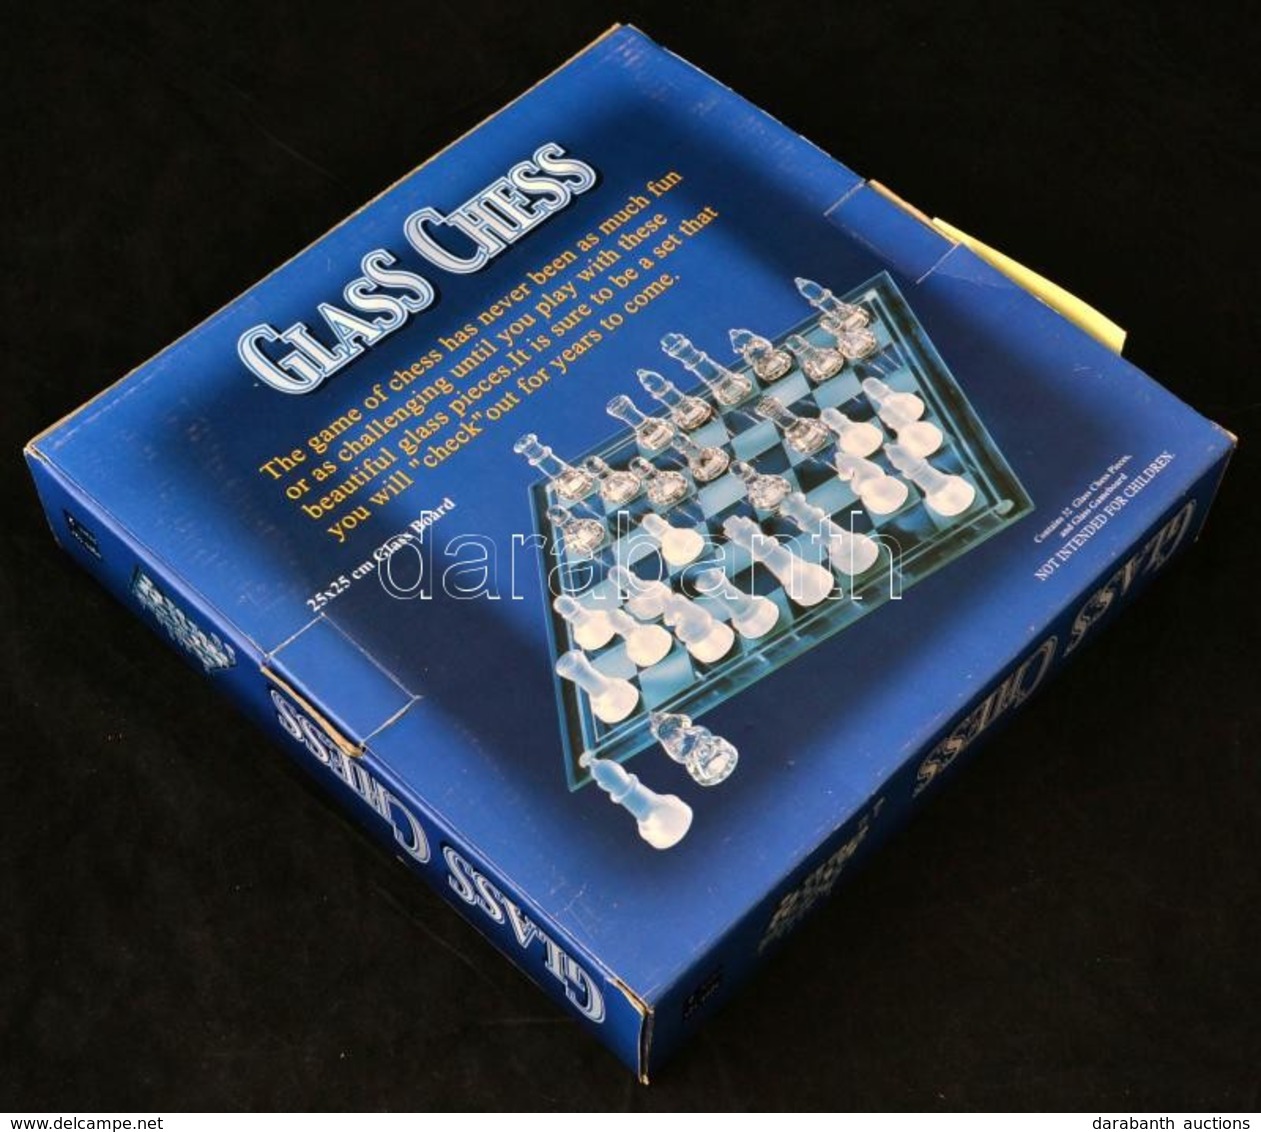 Üveg Sakk-készlet, Eredeti Dobozában, Nem Használt. / Glass Chess Set. - Glas & Kristal